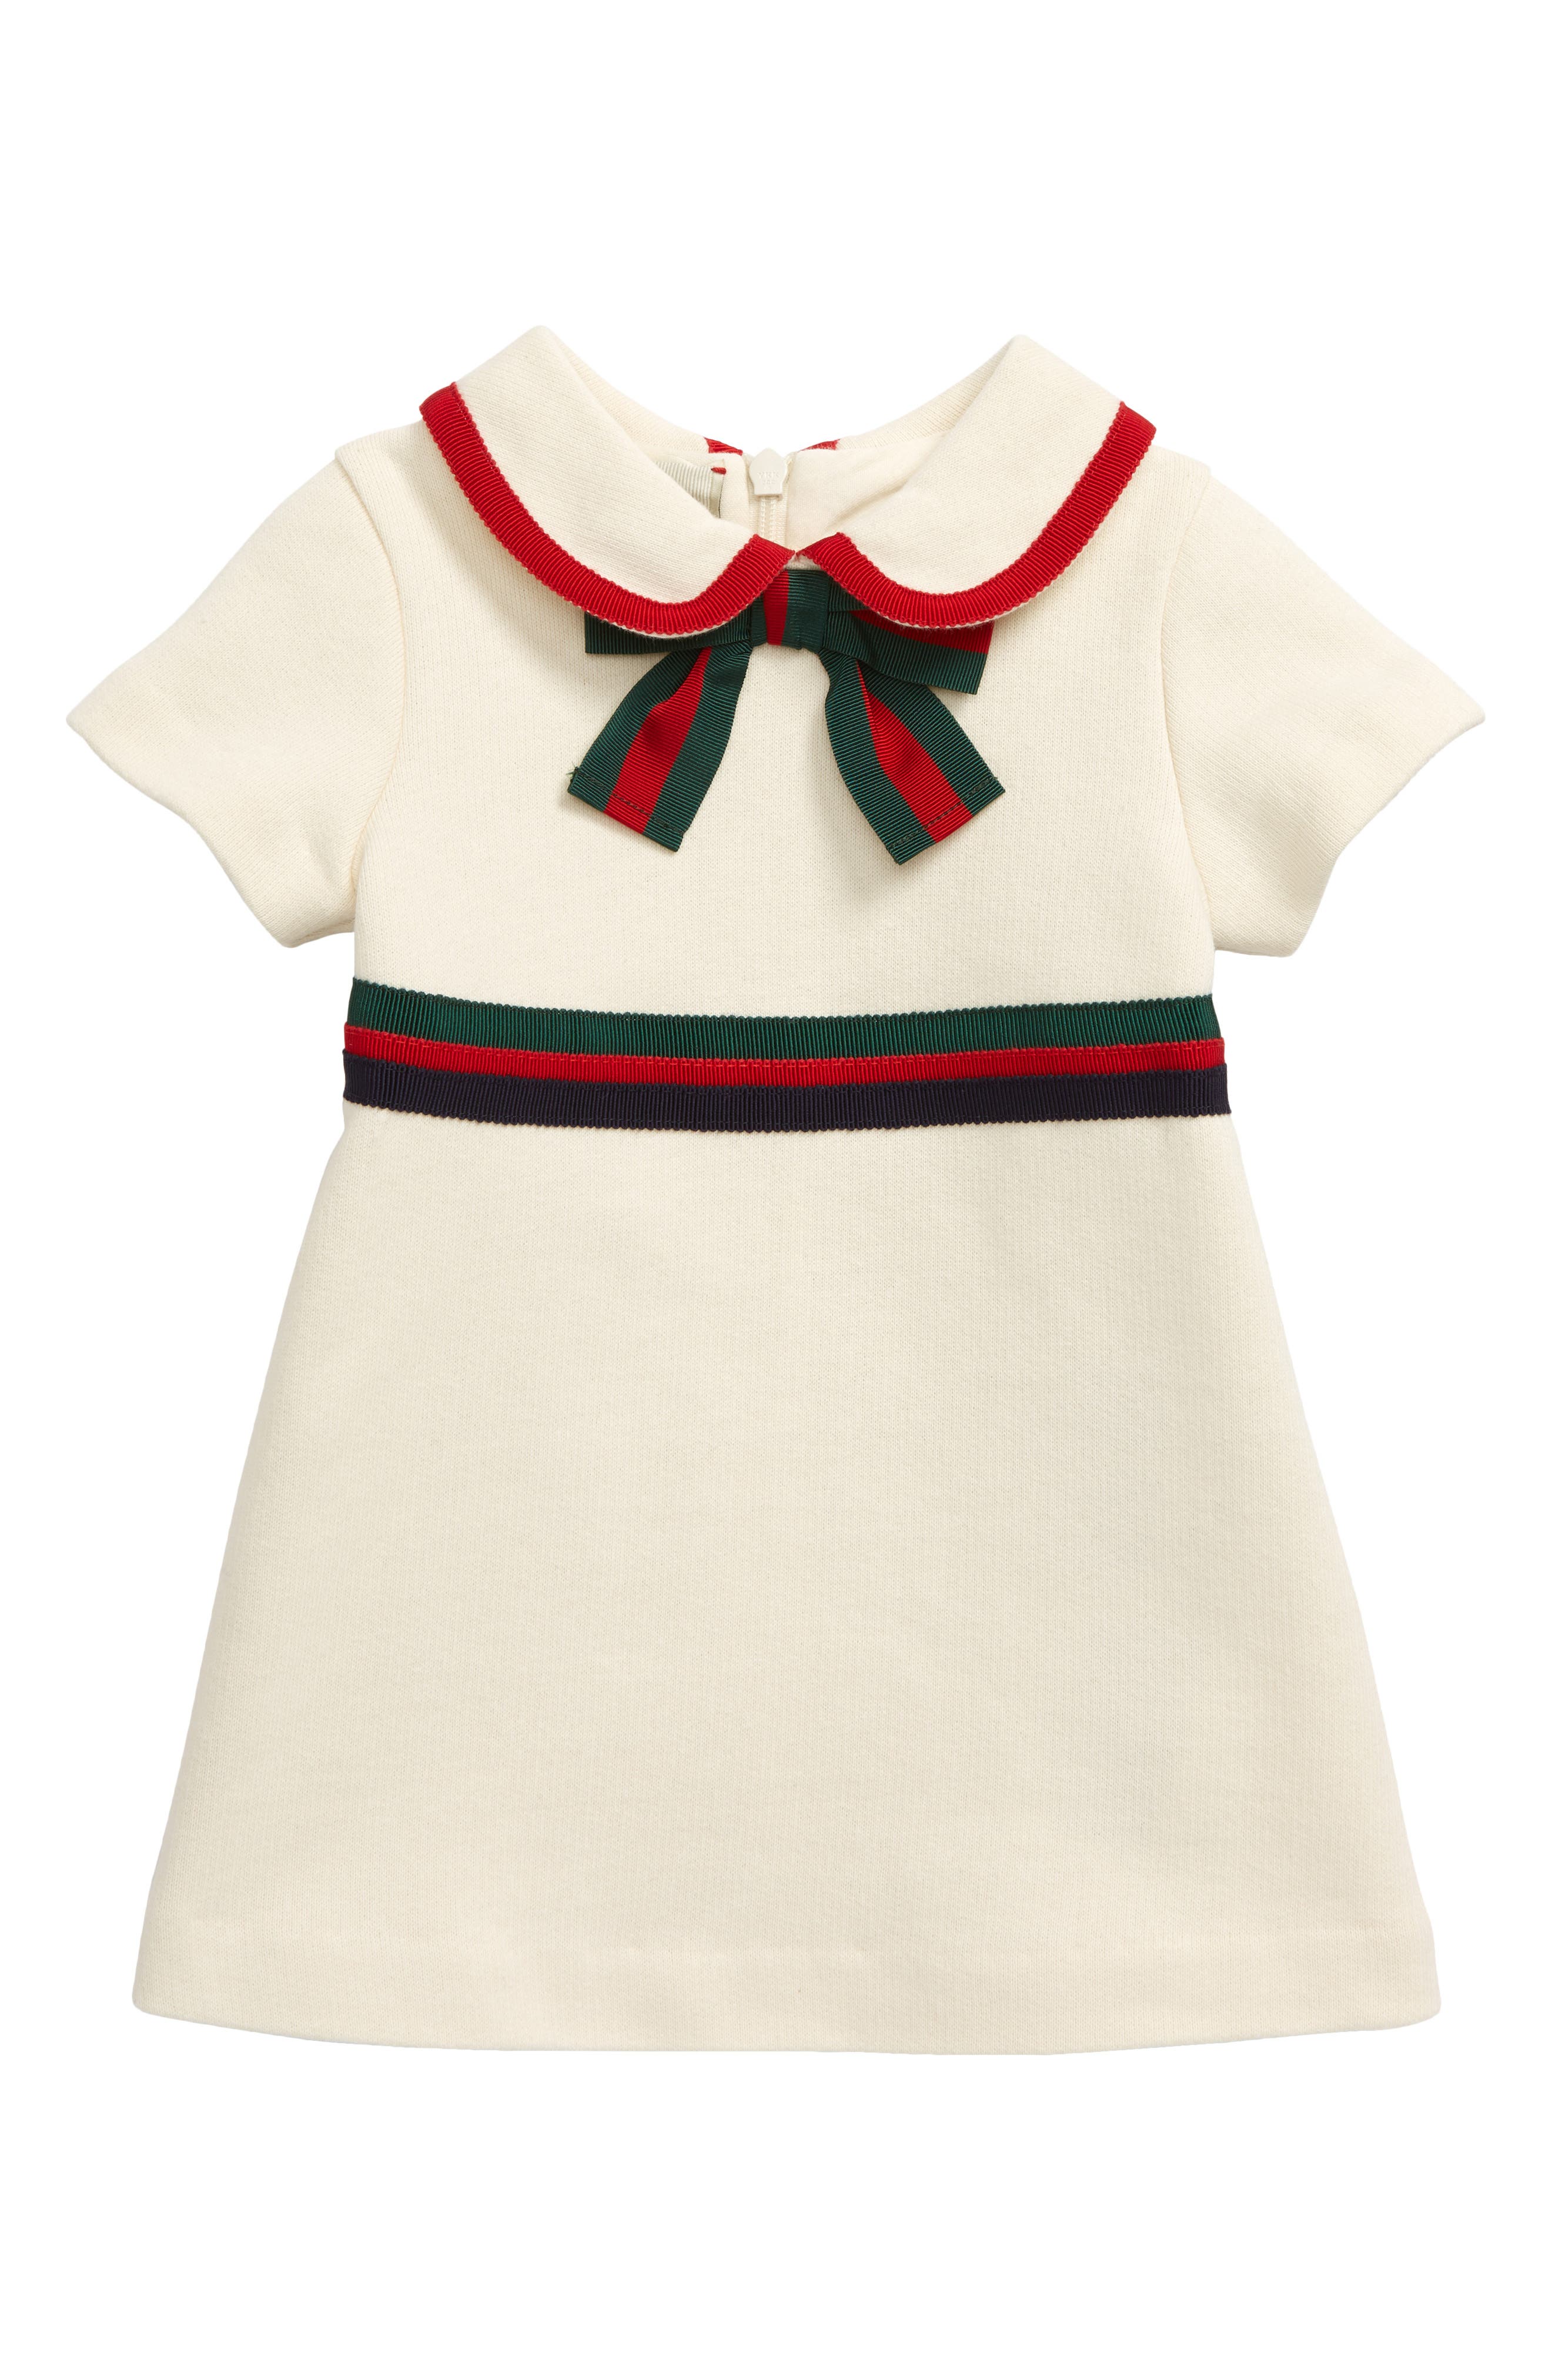 Gucci Peter Pan Collar Dress (Baby 